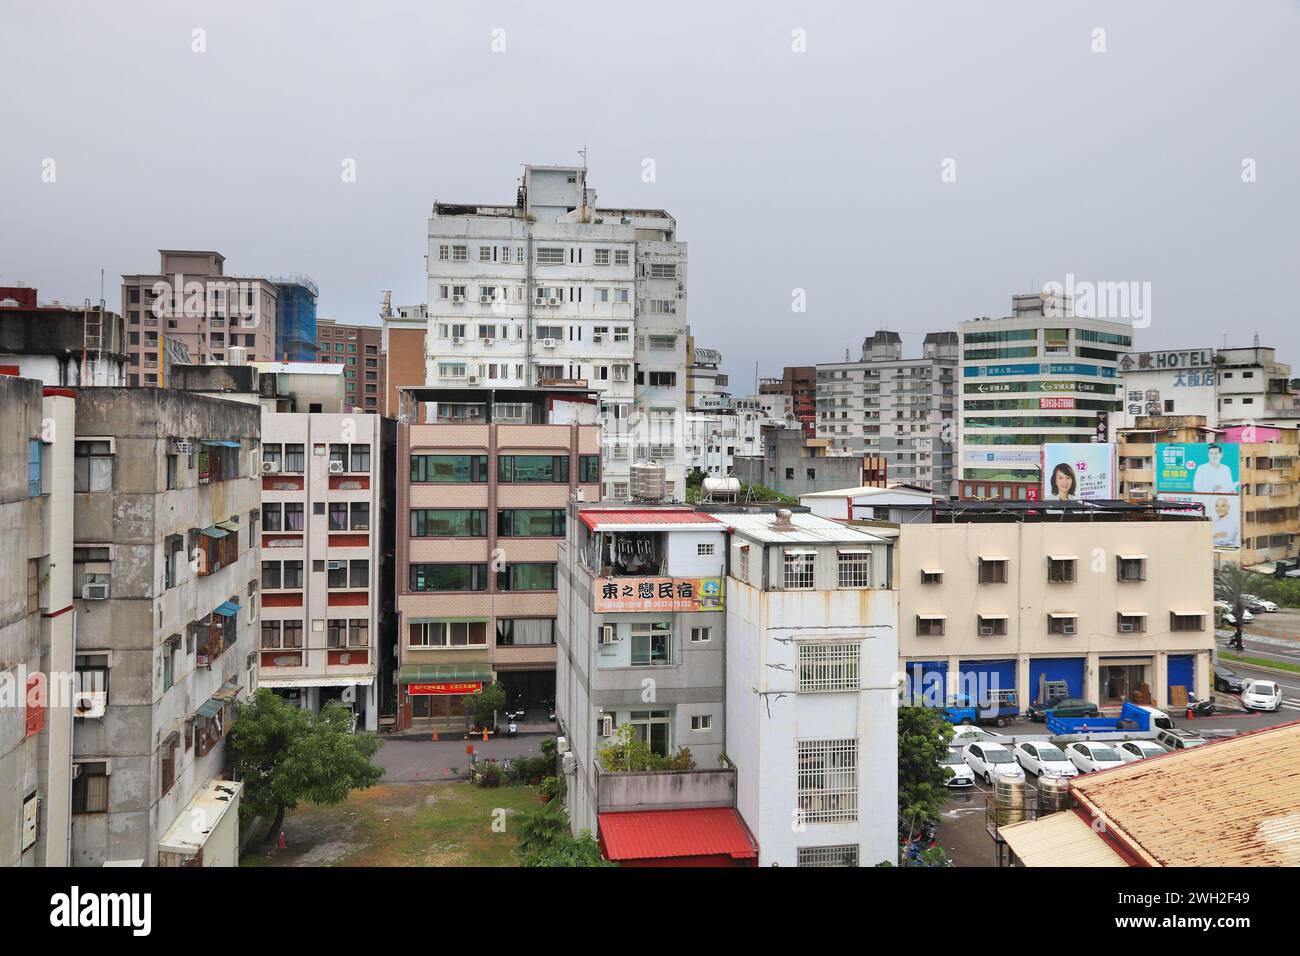 HUALIEN, TAIWAN - 26 NOVEMBRE 2018 : paysage urbain de Hualien, Taiwan. Hualien est l'une des plus grandes villes de la côte est de Taïwan. Banque D'Images